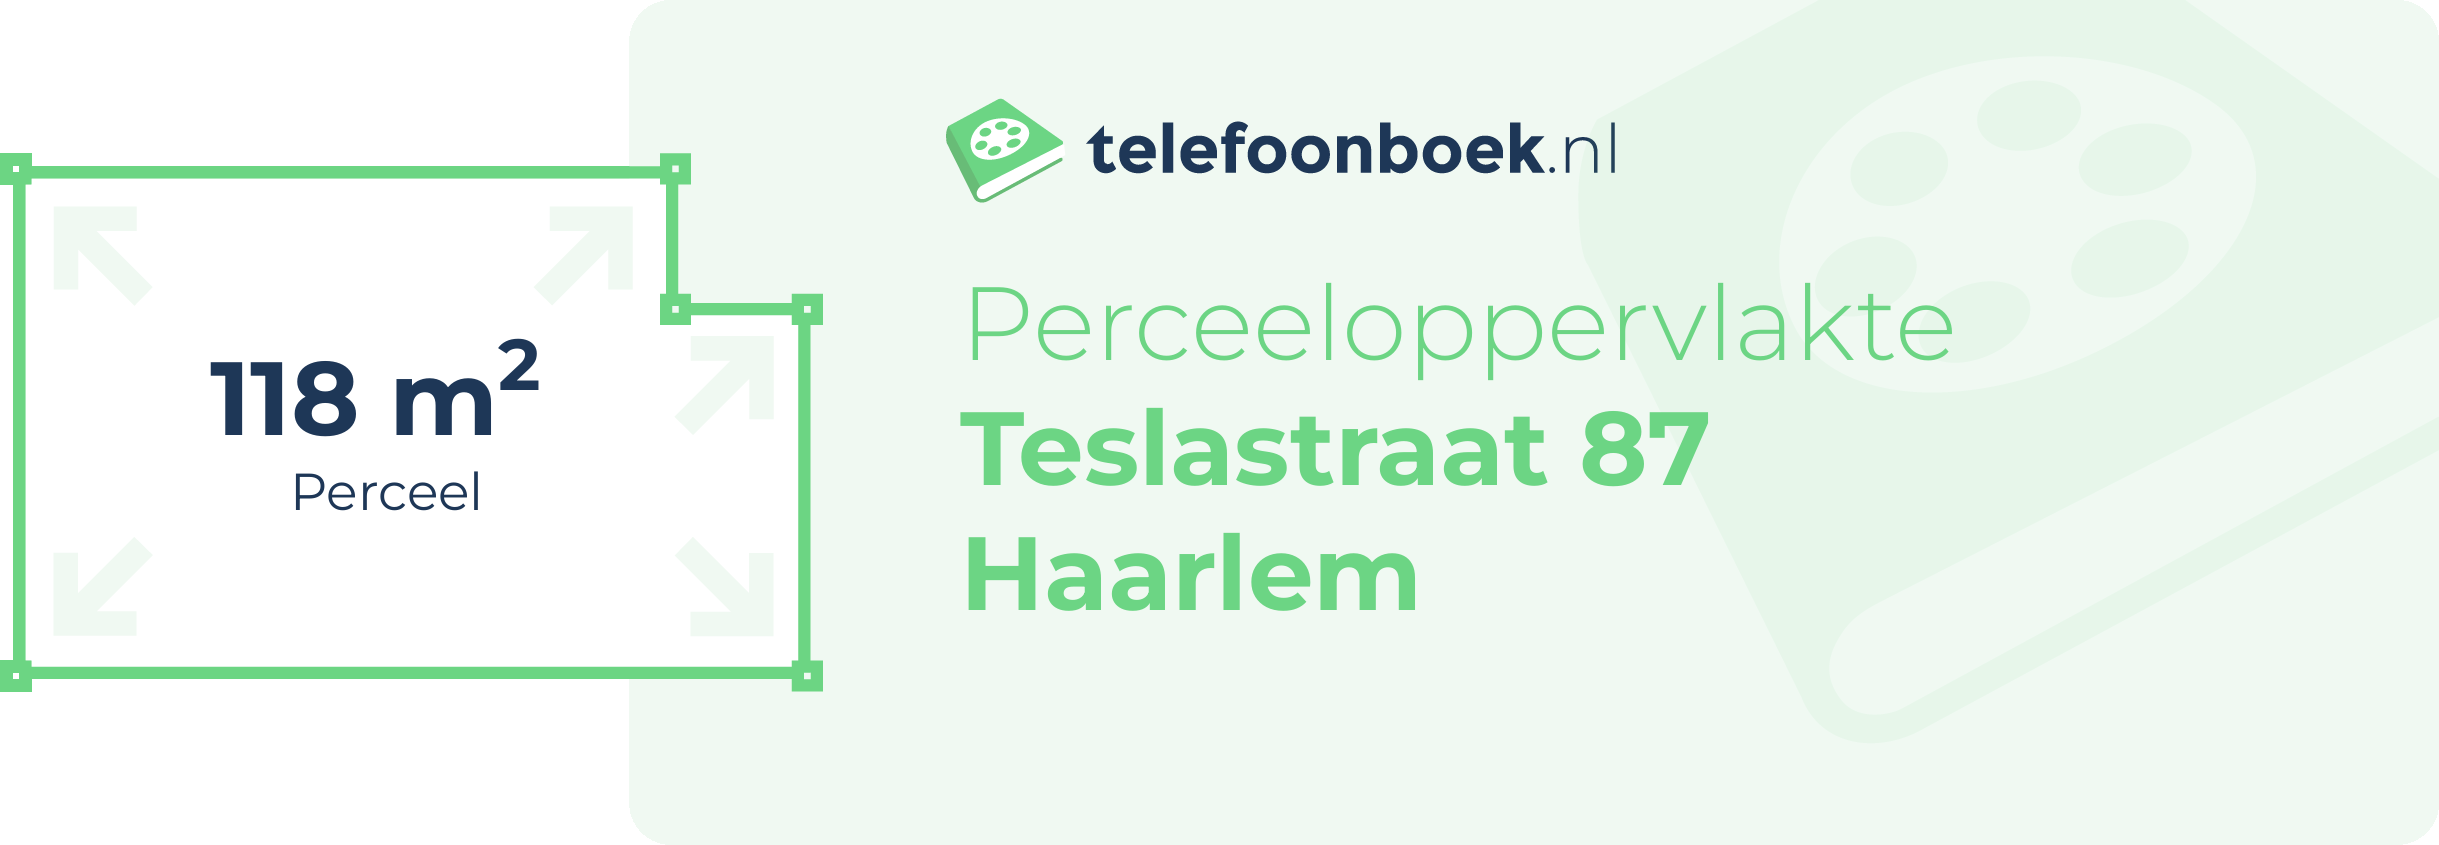 Perceeloppervlakte Teslastraat 87 Haarlem